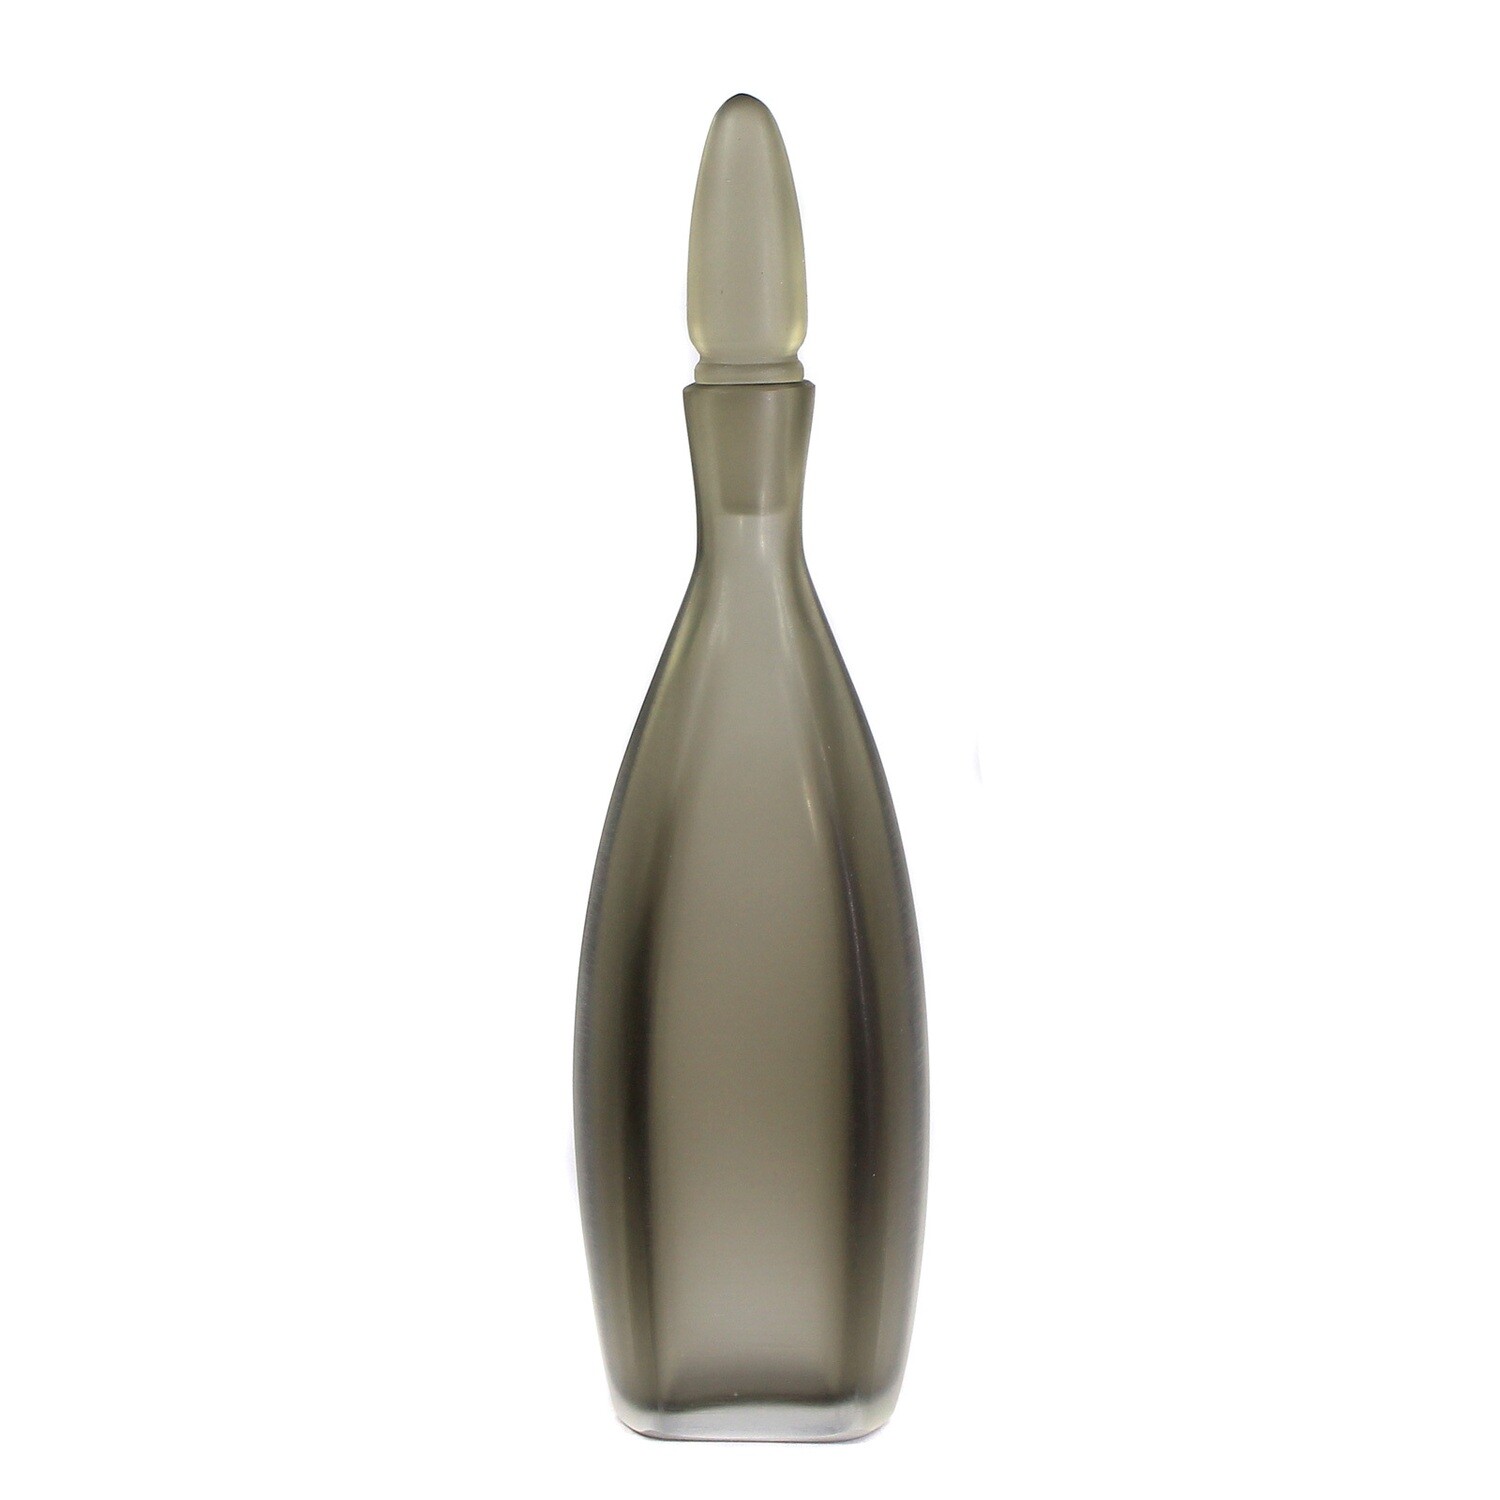 Small topaz glass bottle, Venini Inciso, signed 1993